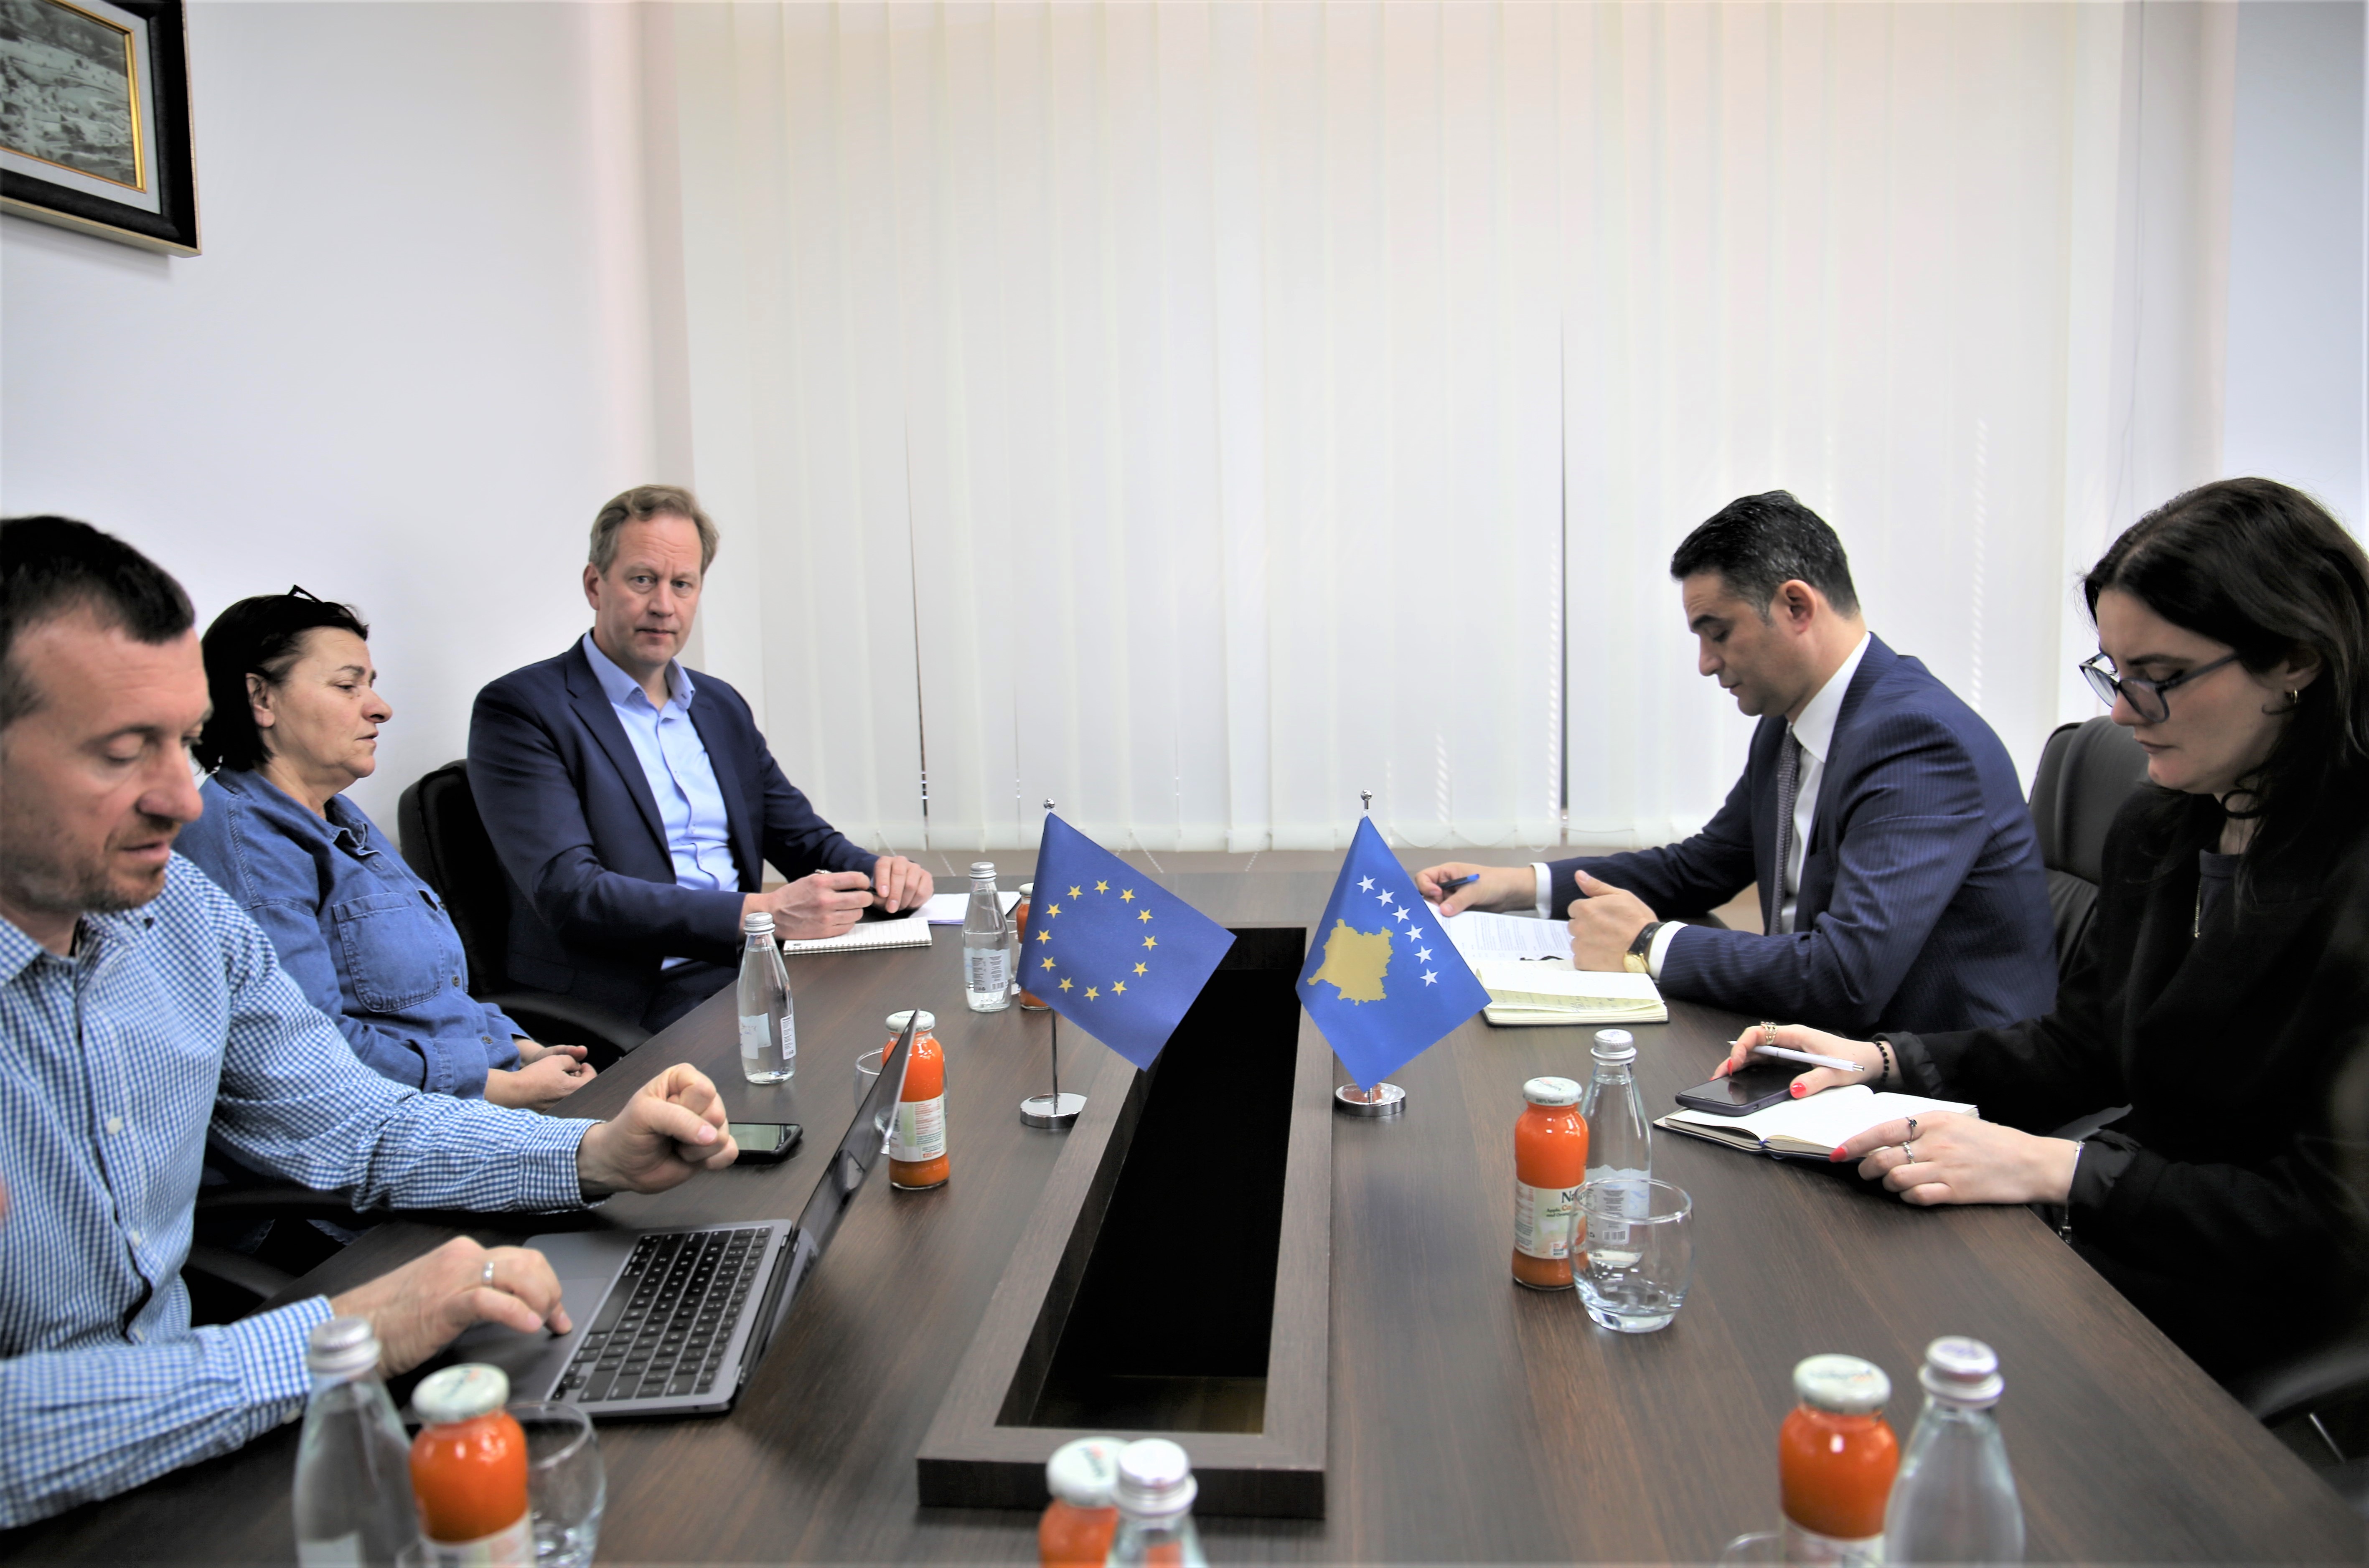 Drejtori i Përgjithshëm i SKPK-së priti në takim ekspertët e projektit “Përmirësimi i trajtimit të personave të privuar nga liria” të Zyrës së Këshillit të Evropës